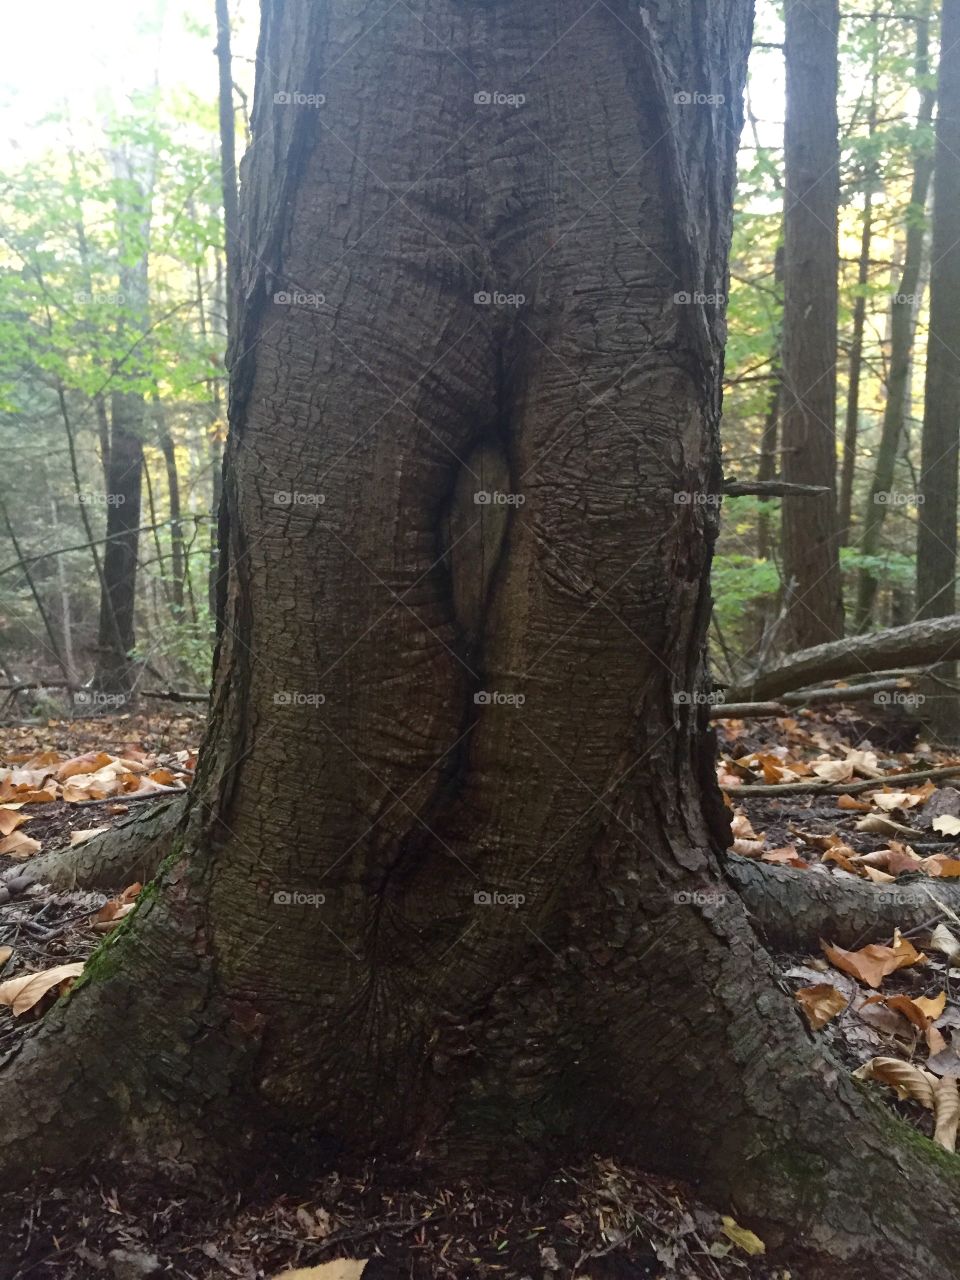 Strange tree